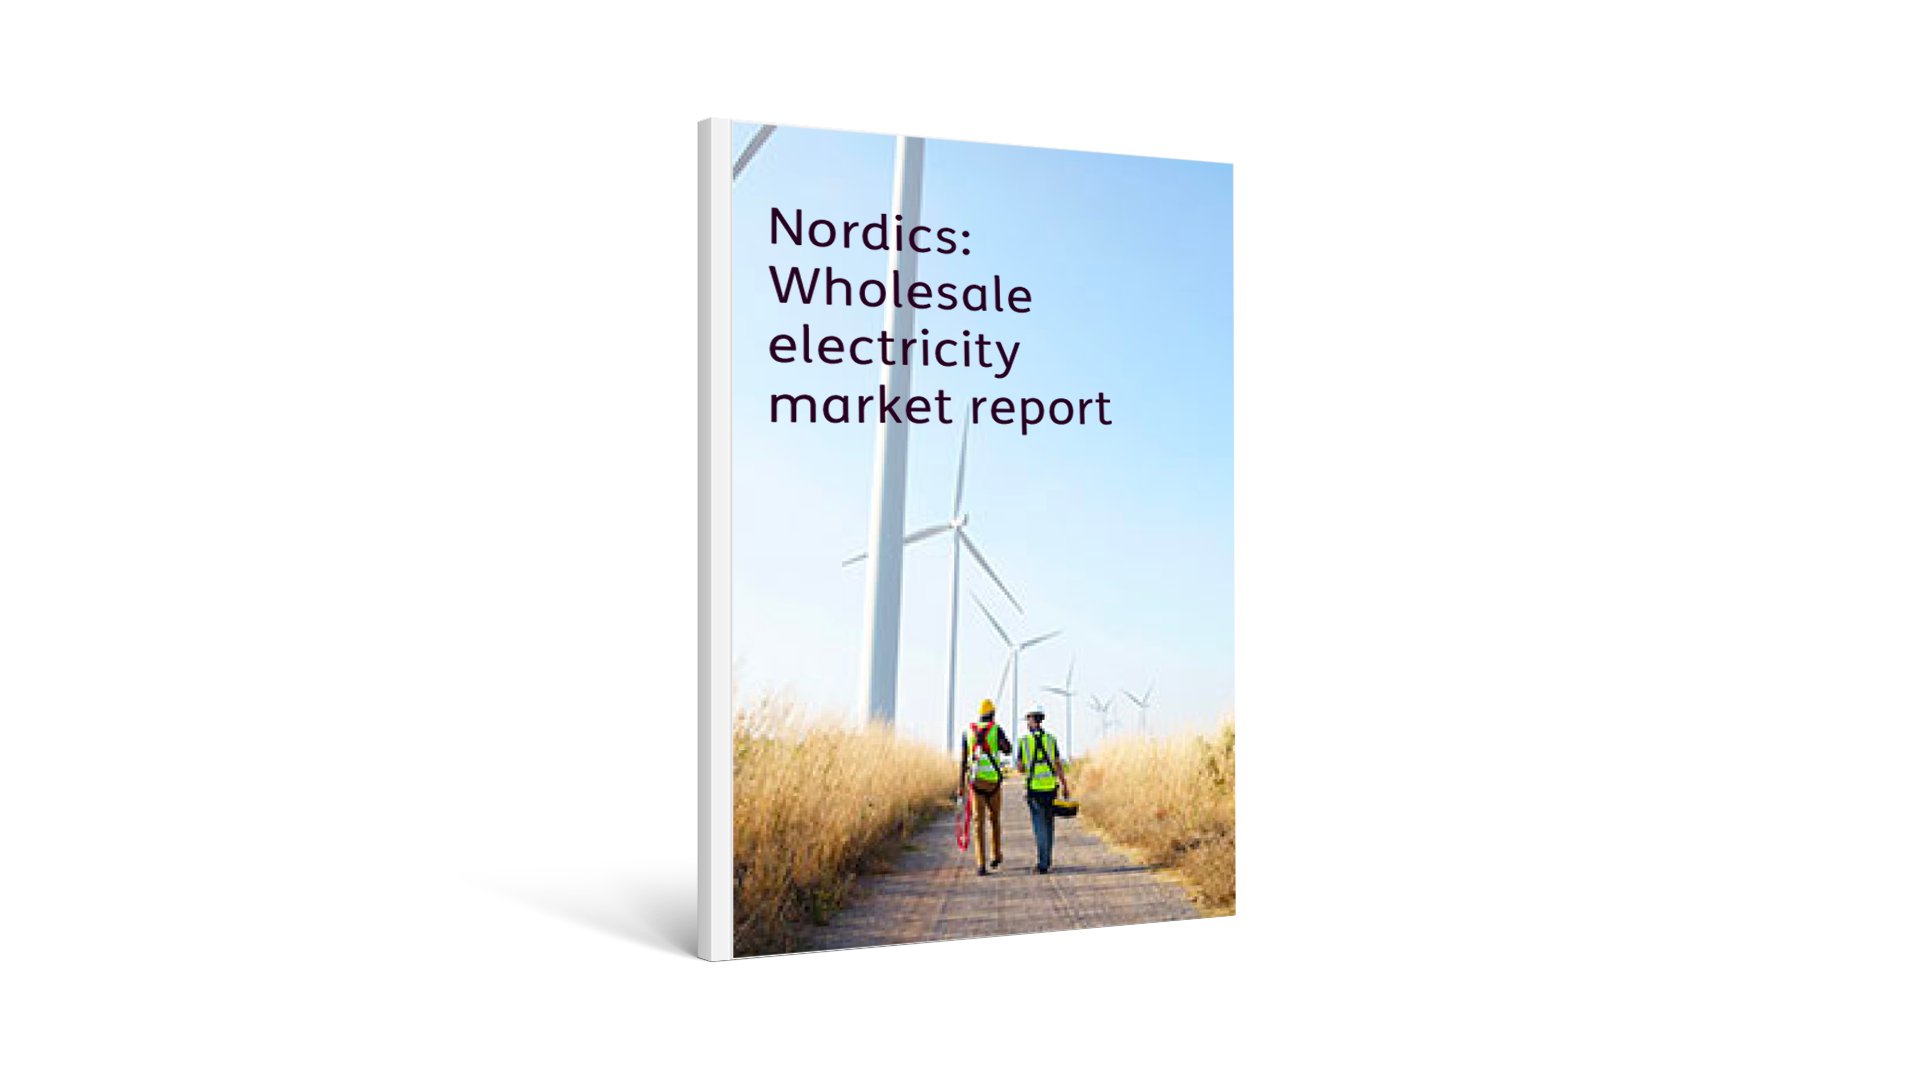 Nordics: Wholesale electricity market report